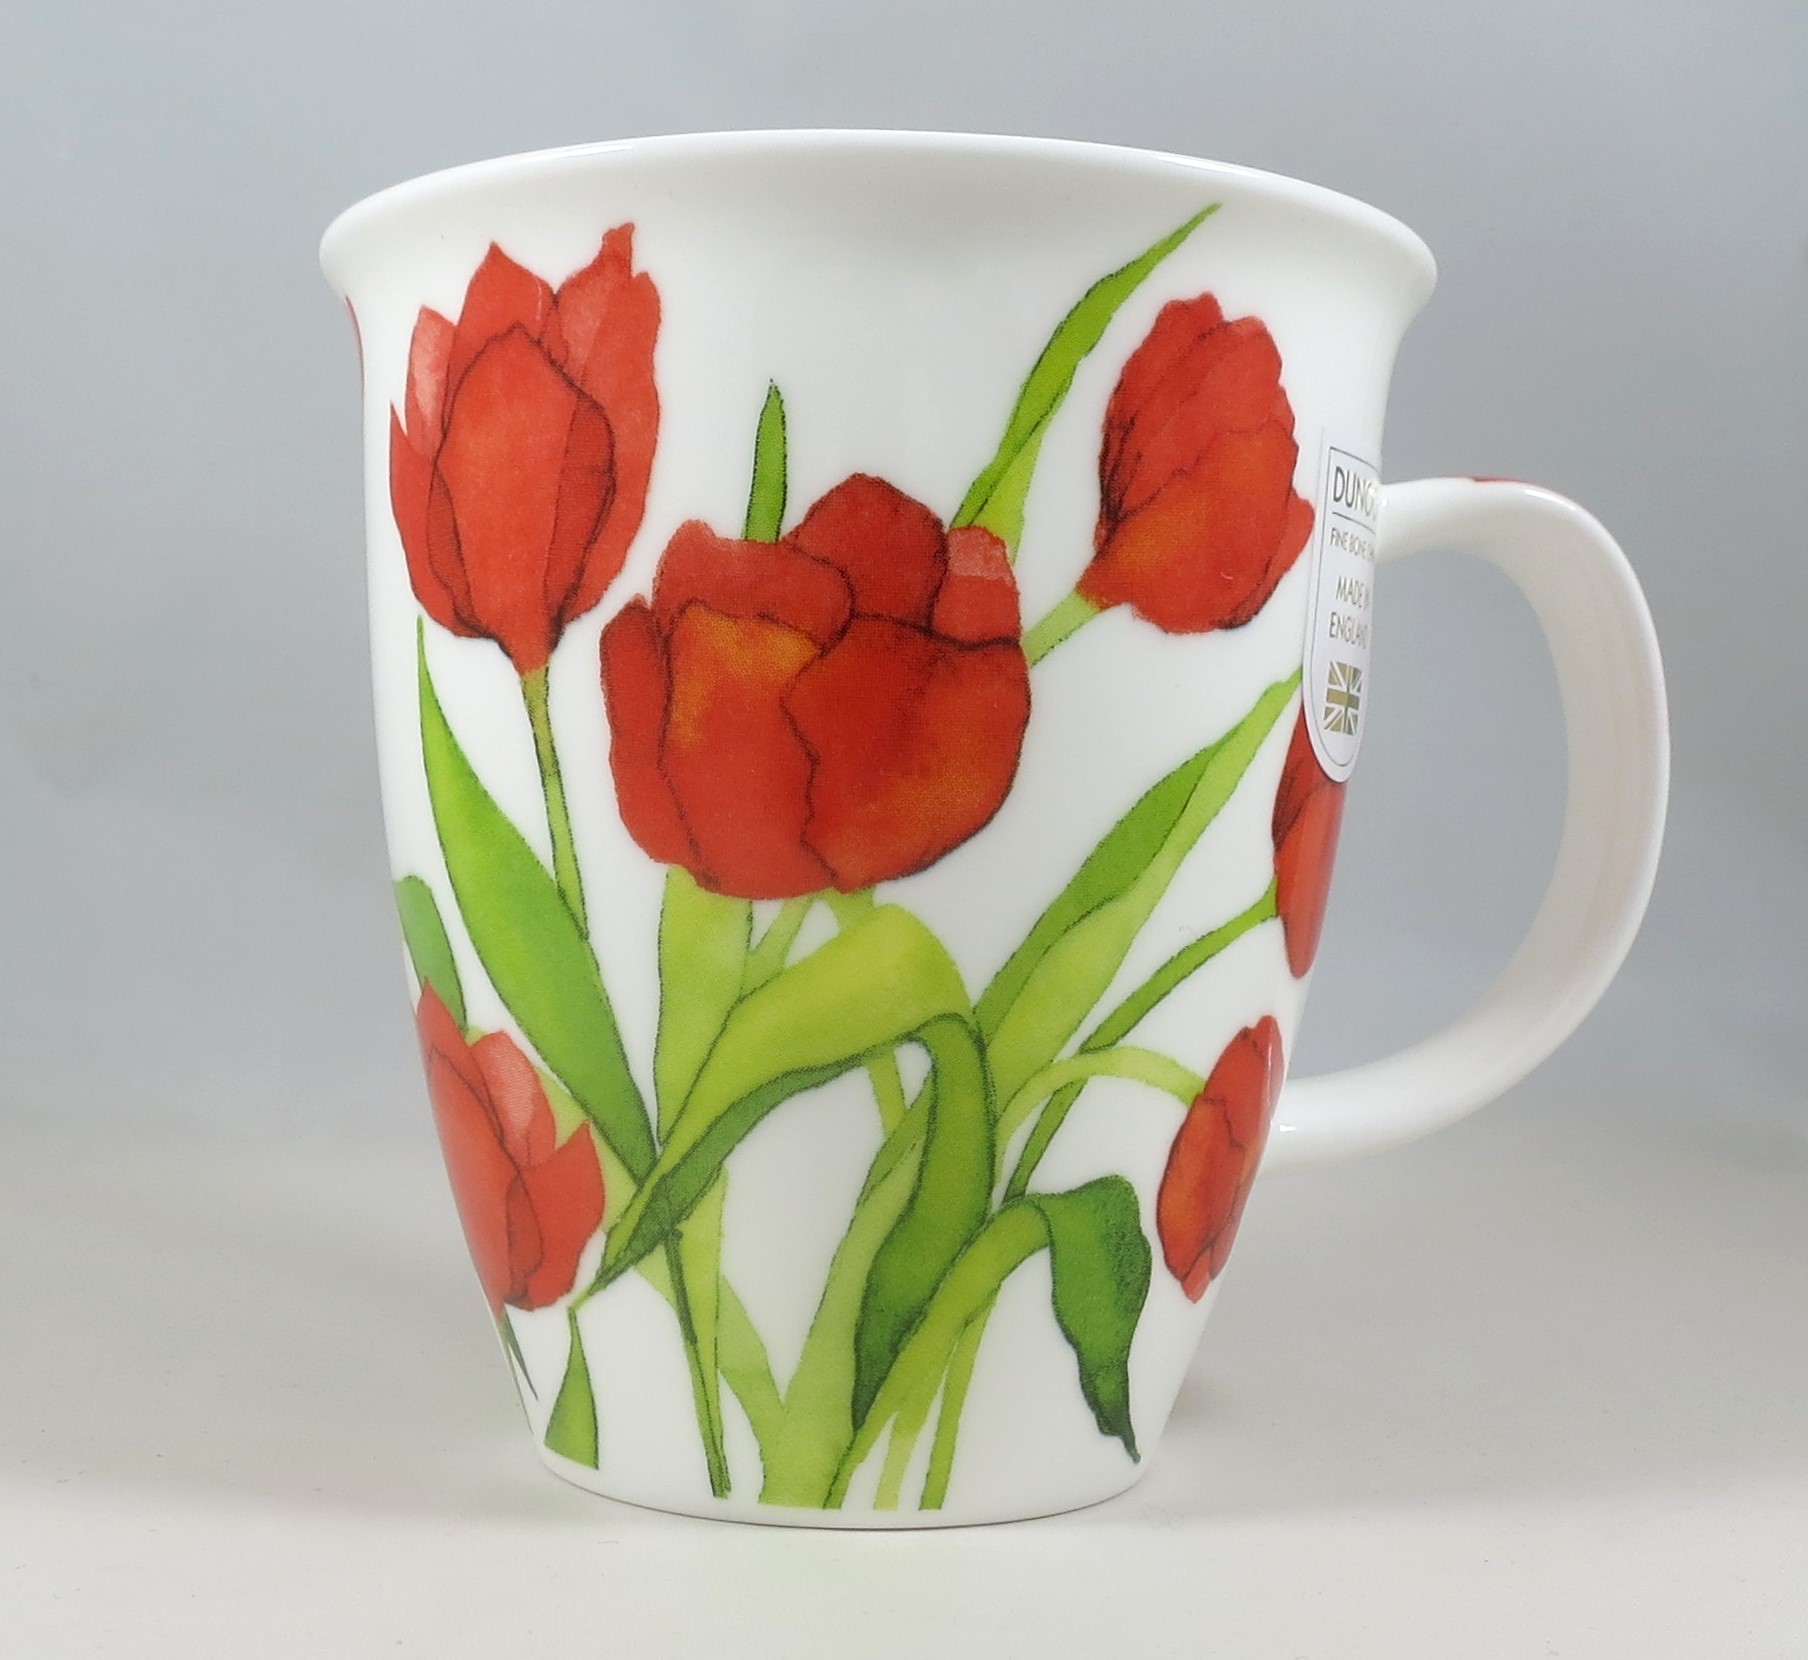 Porzellan Becher mit roten Tulpen. Frühlingbecher von Dunoon